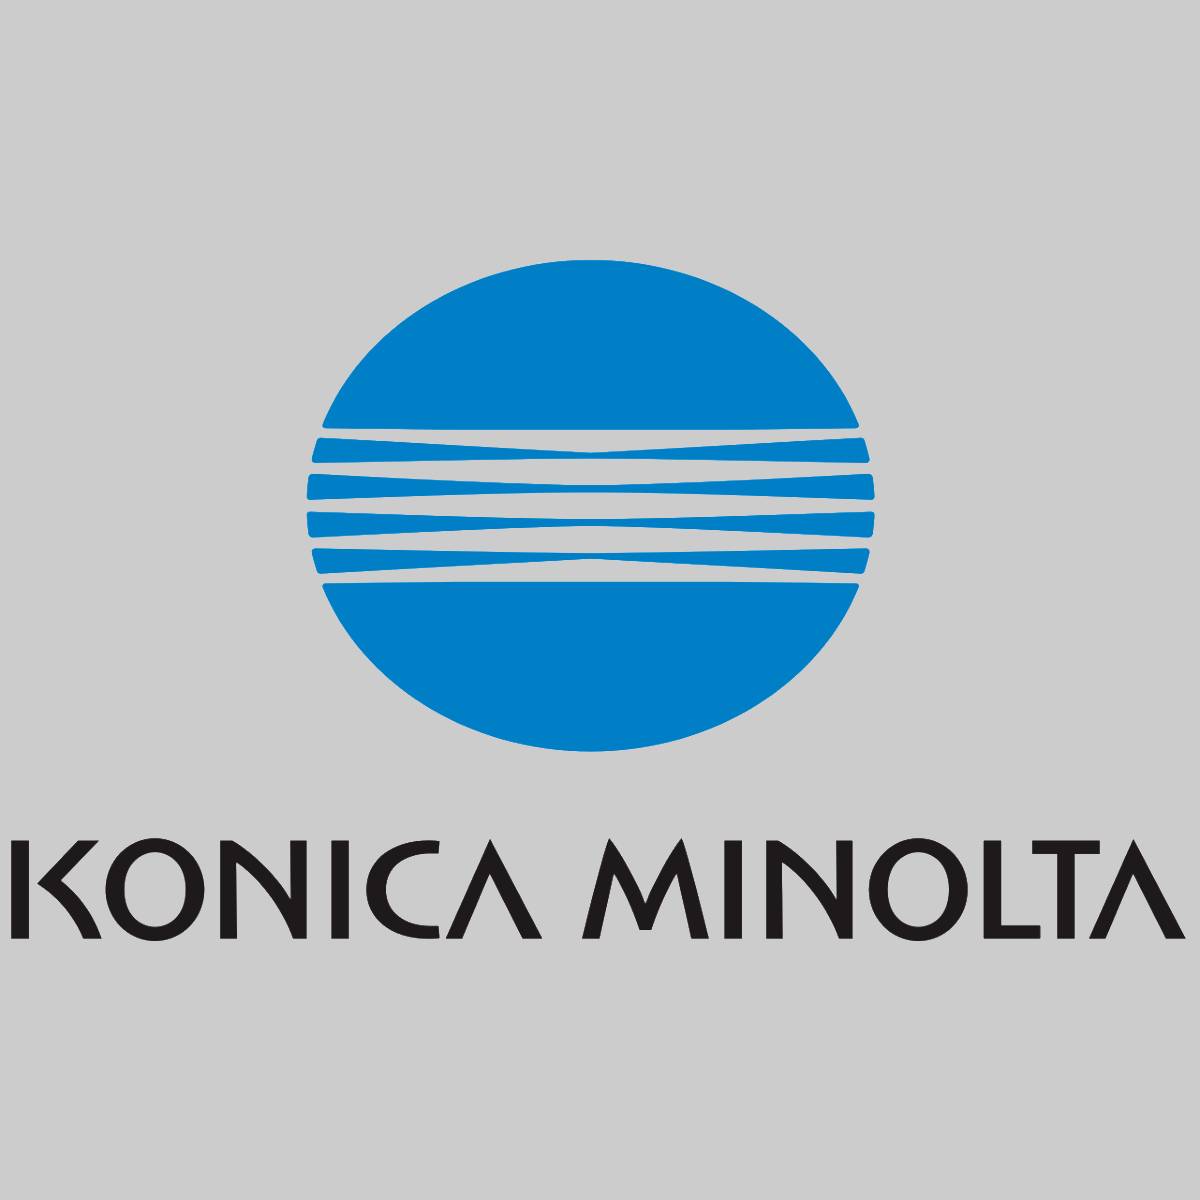 "Originele Konica Minolta TNP-50C toner cyaan A0X5454 voor Bizhub C3100P NIEUW OVP^